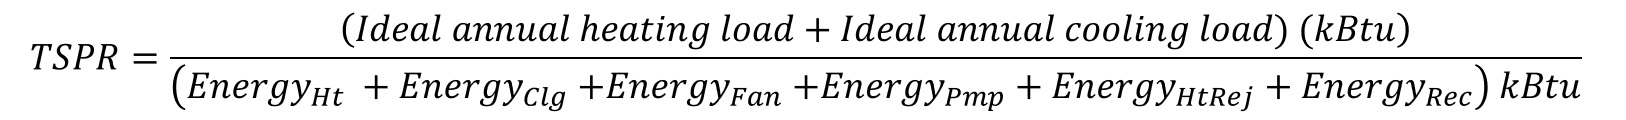 TSPR equation diagram